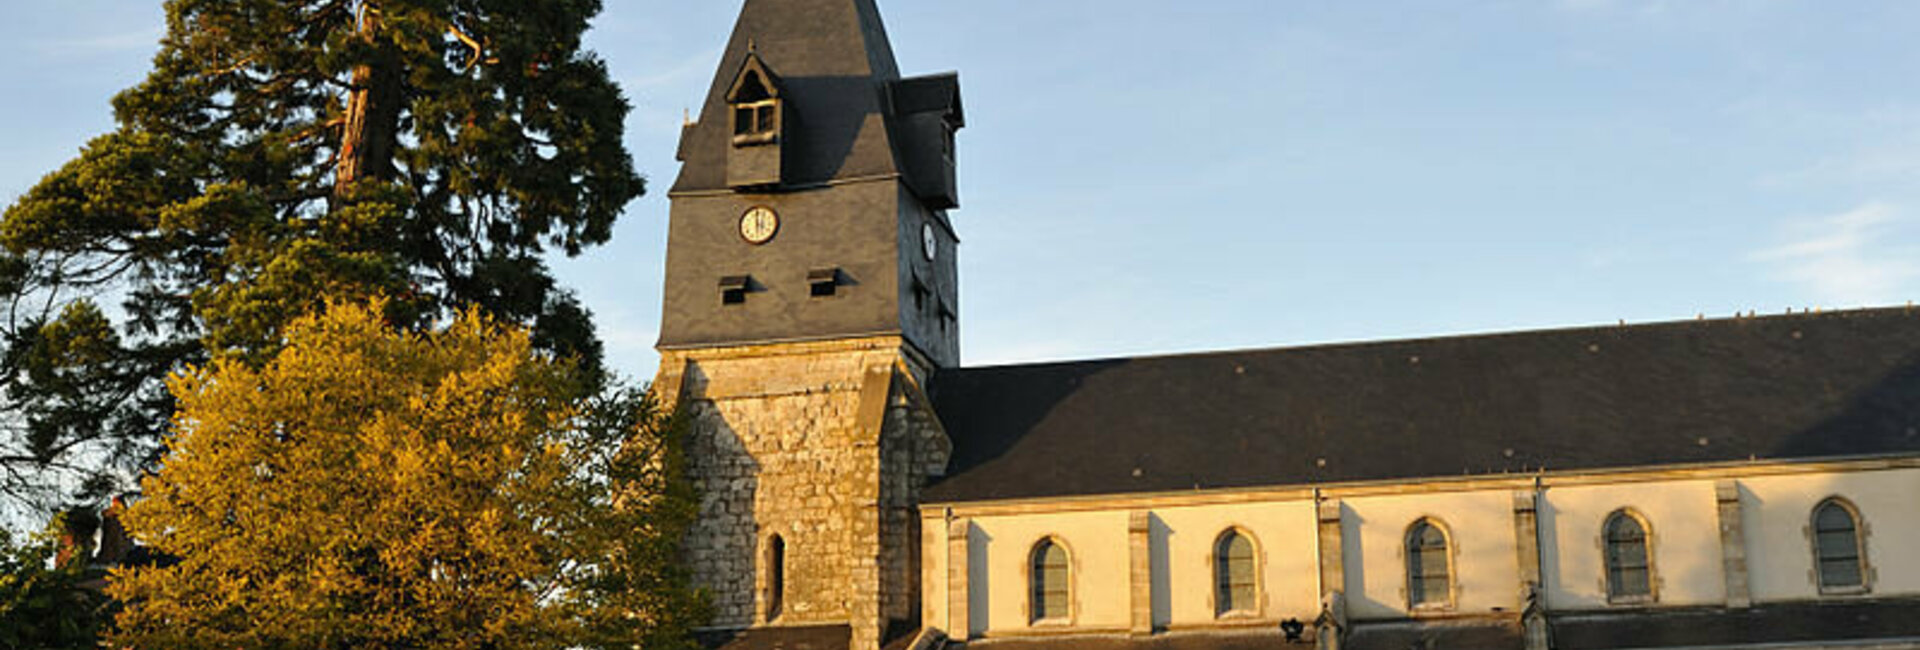 Les associations de la commune de Aschères-le-marché (45) Loiret